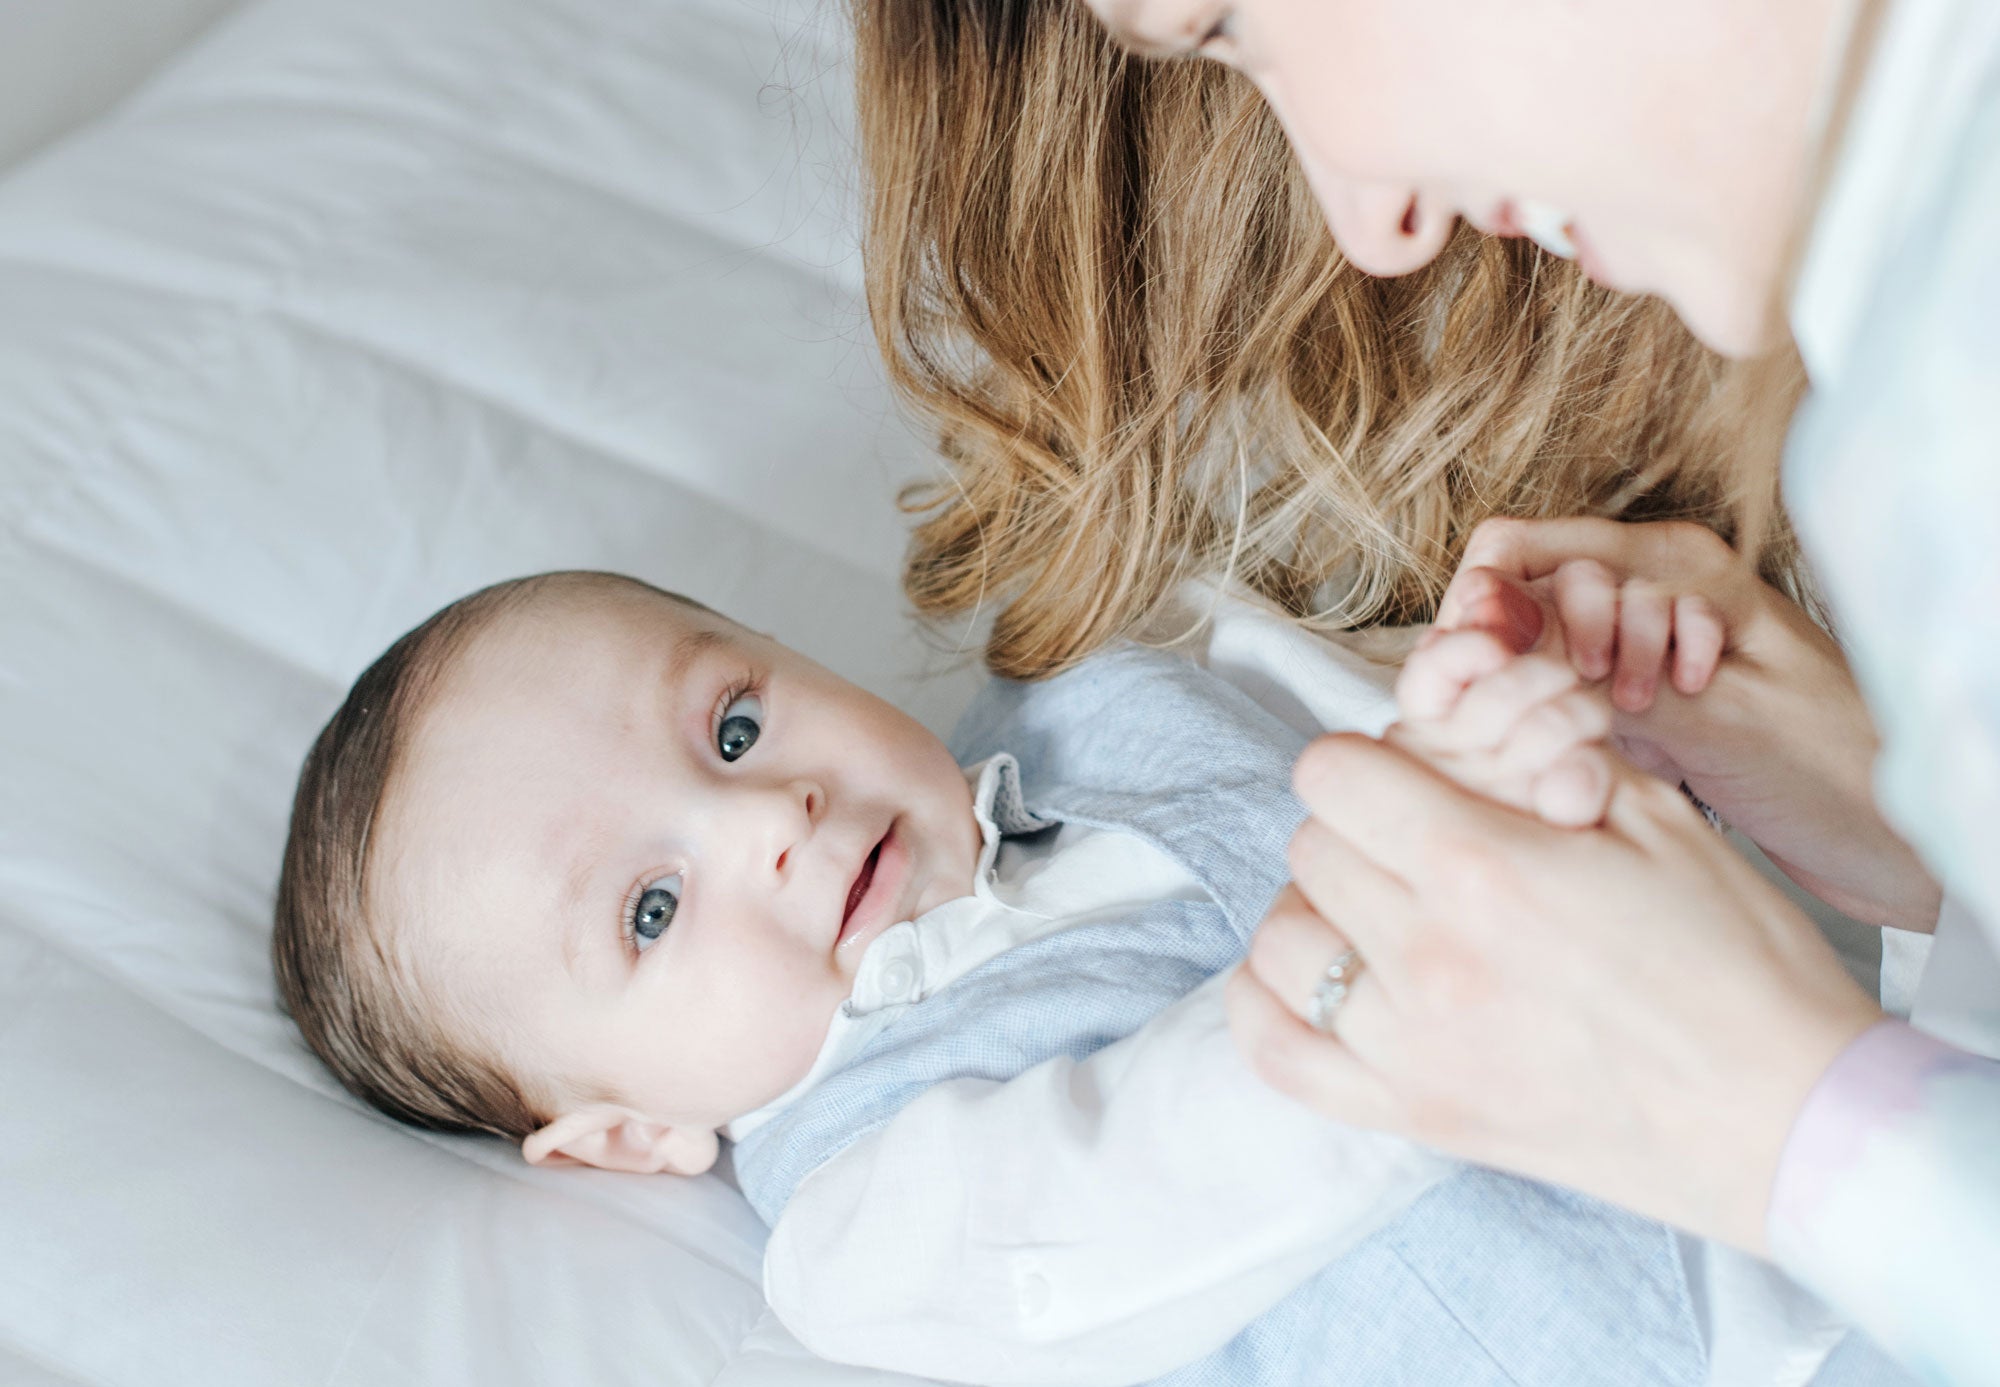 bebé no se queda con hambre en la lactancia materna, incrementa tu banco de leche con Lactana